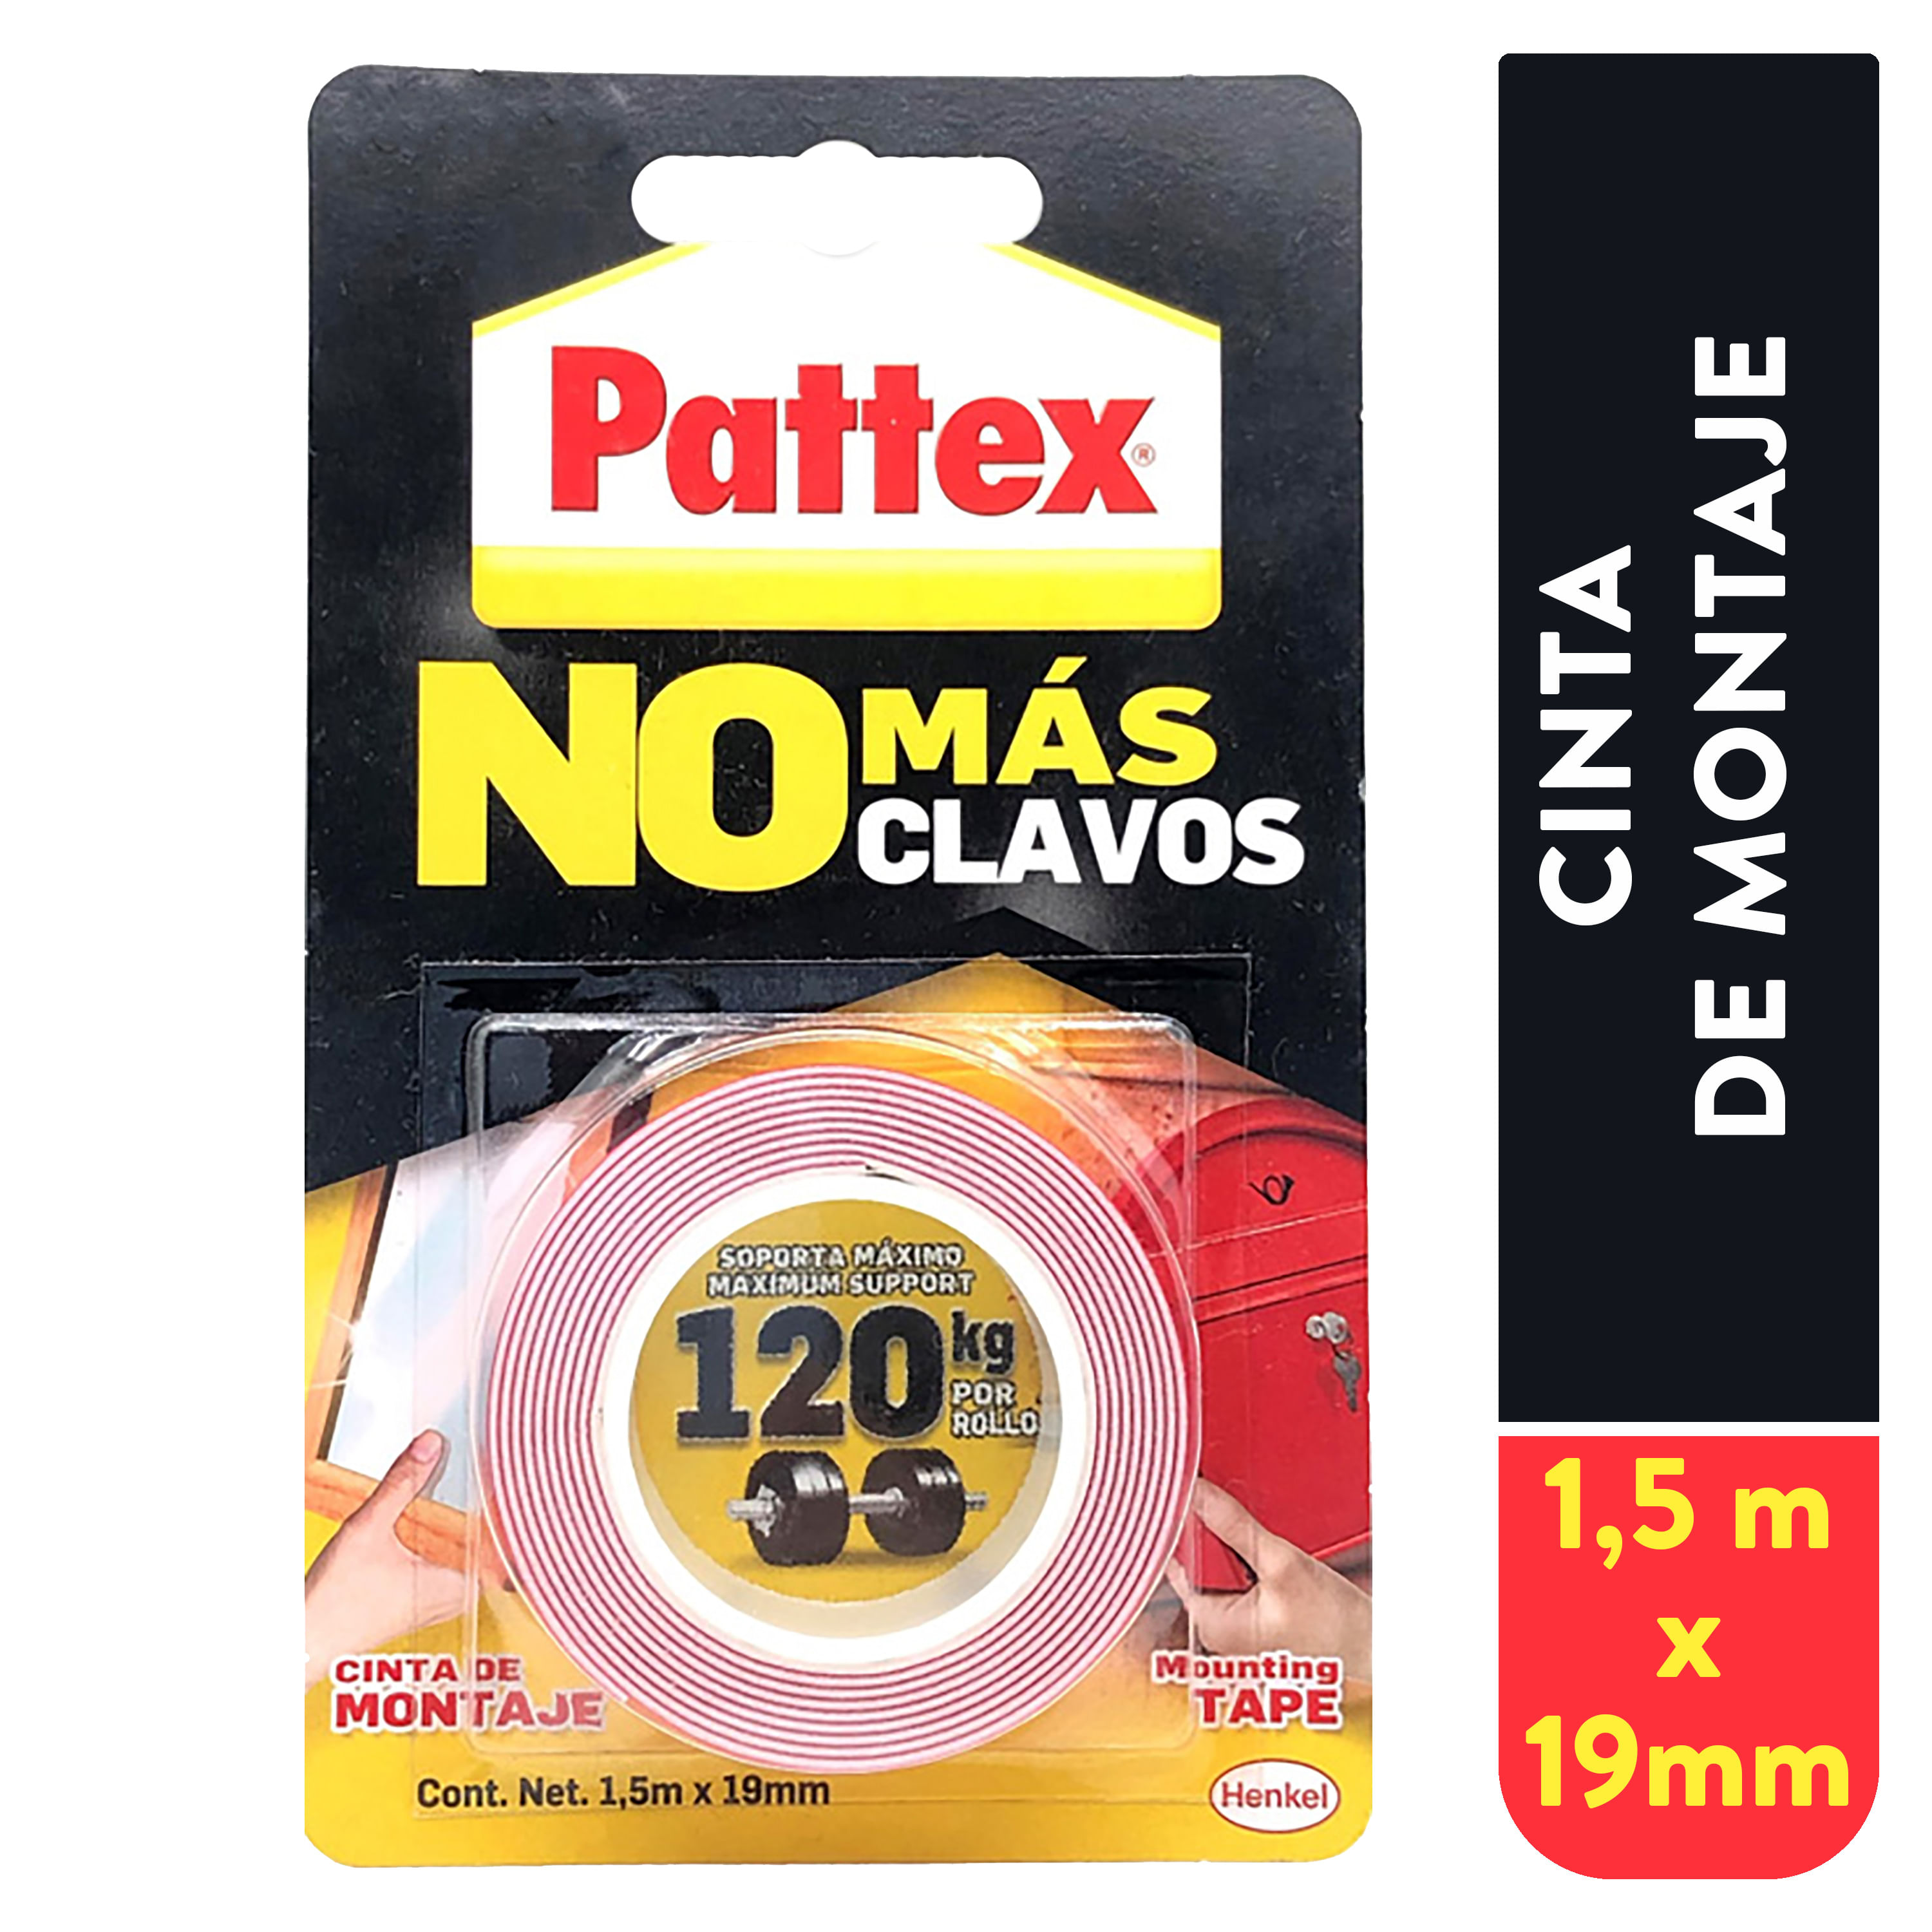 Pattex No Más Clavos Original, adhesivo de montaje resistente